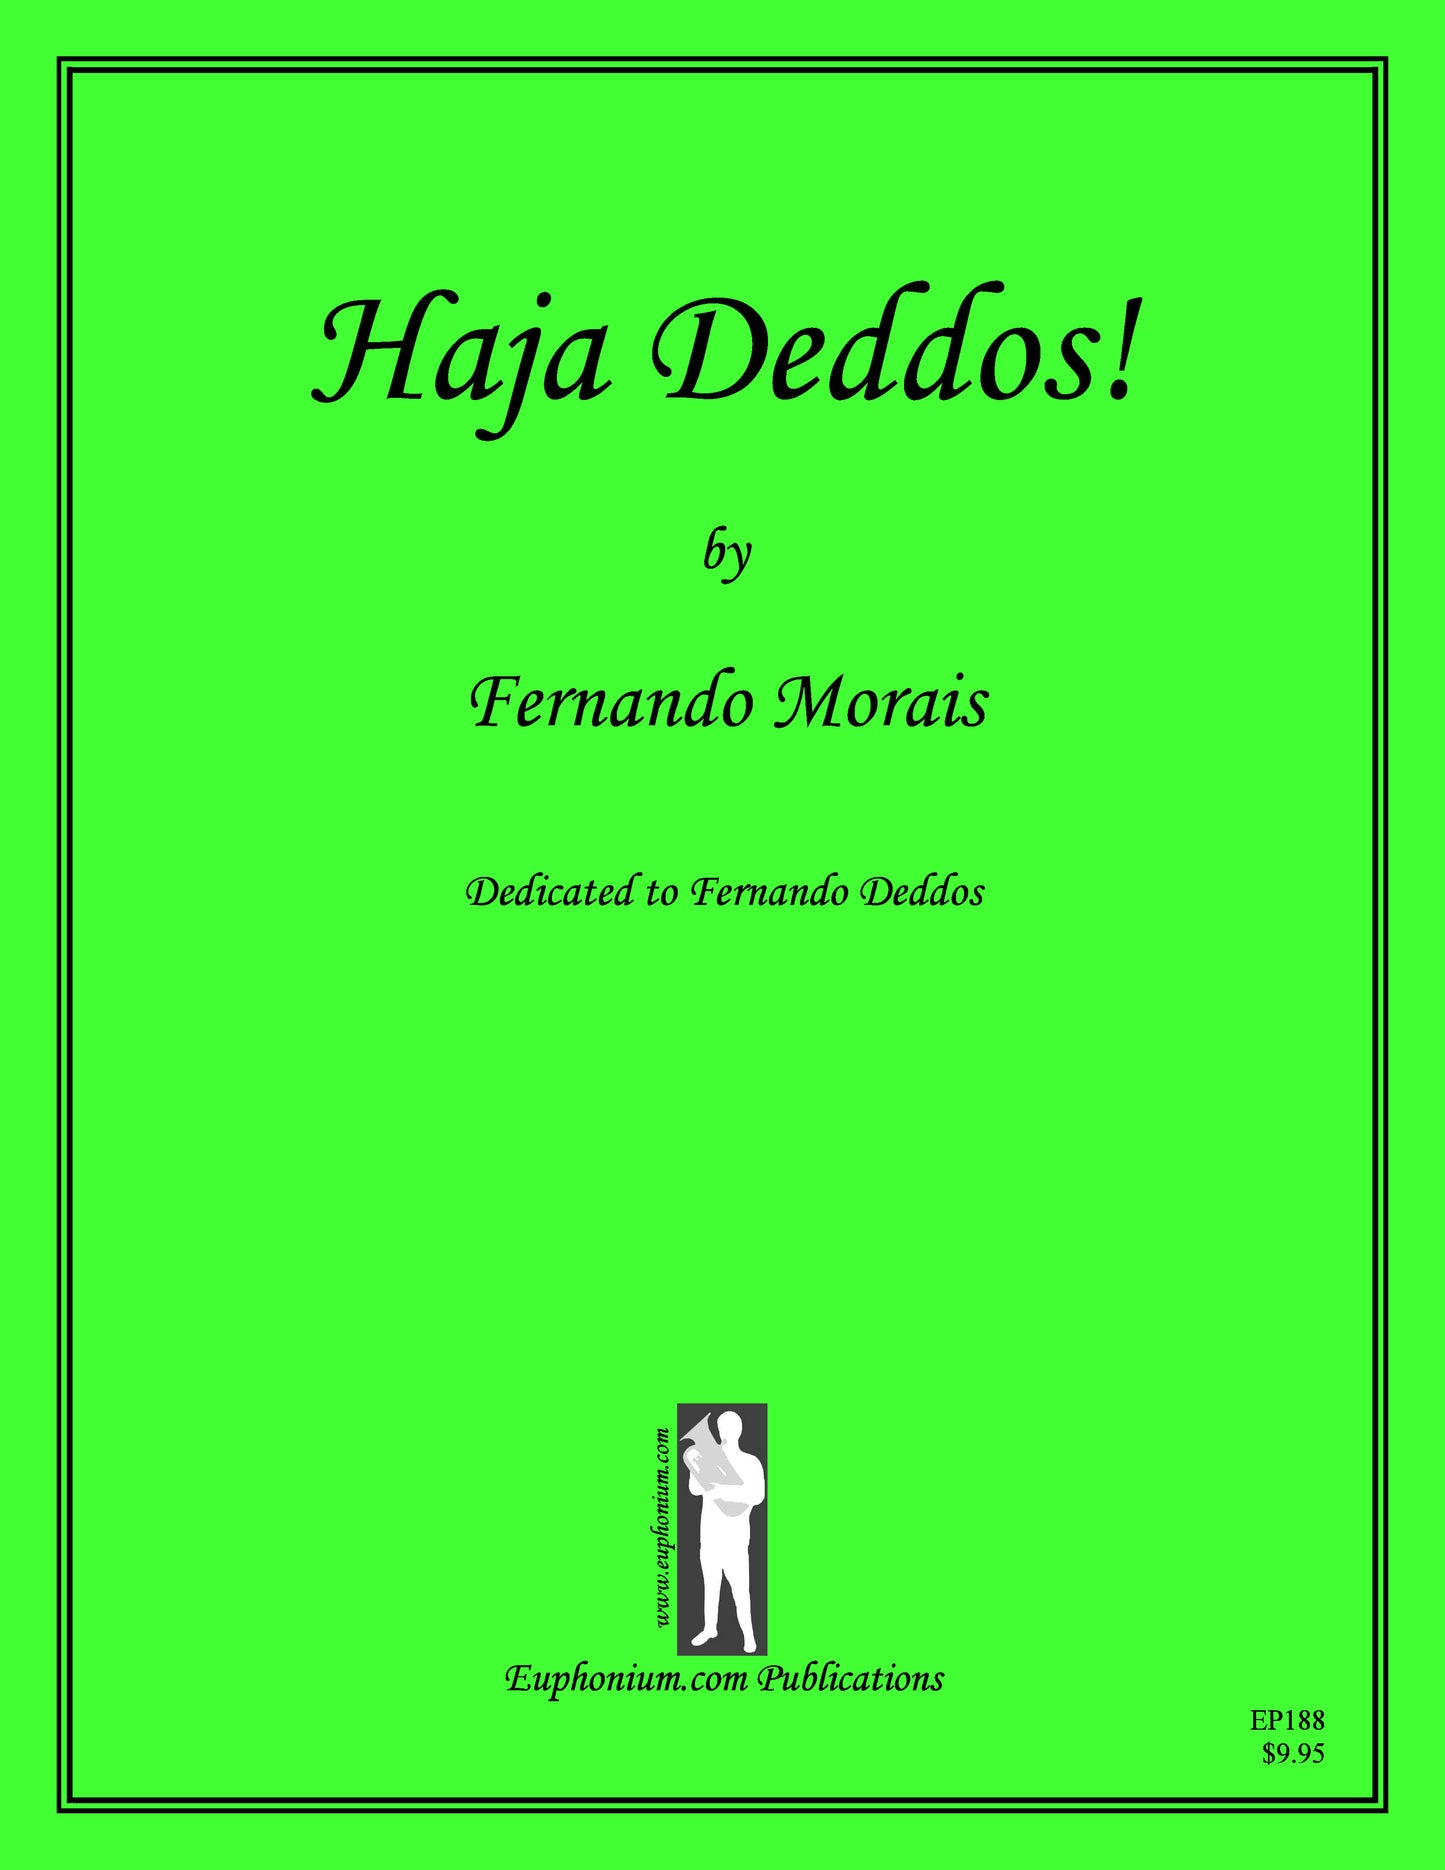 Morais, Fernando - Haja Deddos!!